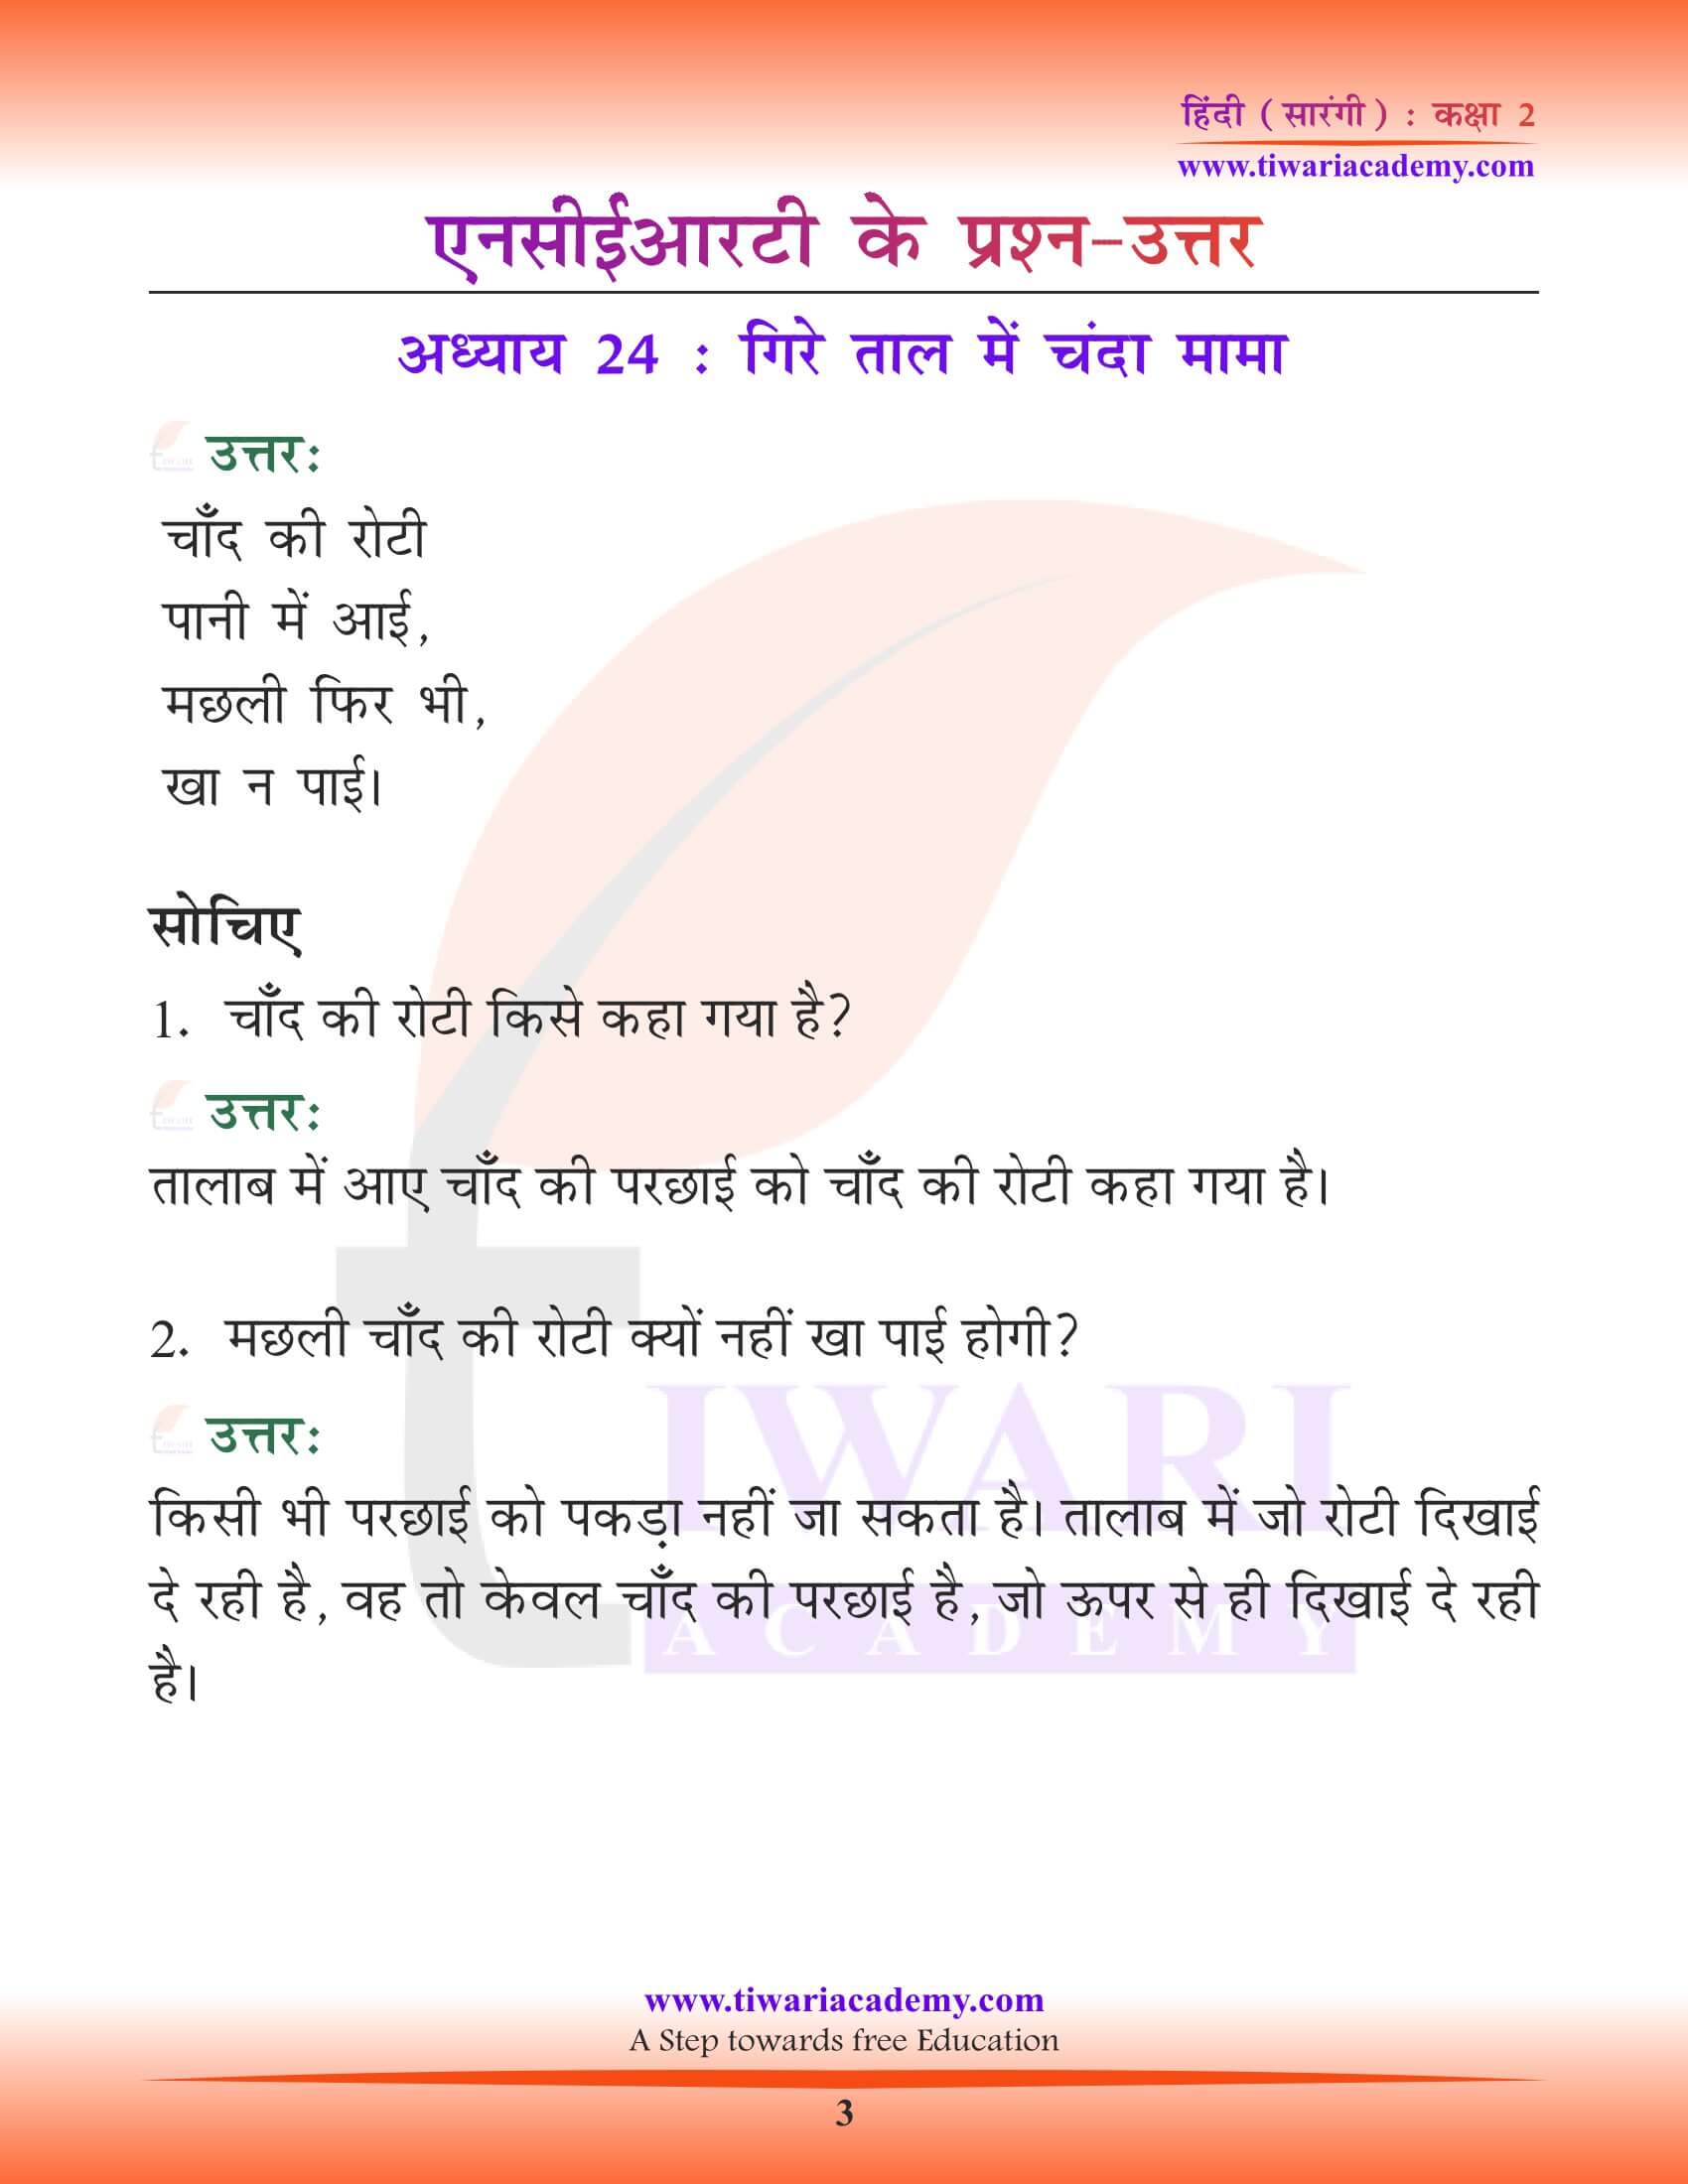 कक्षा 2 हिंदी सारंगी अध्याय 24 गिरे ताल में चंदा मामा